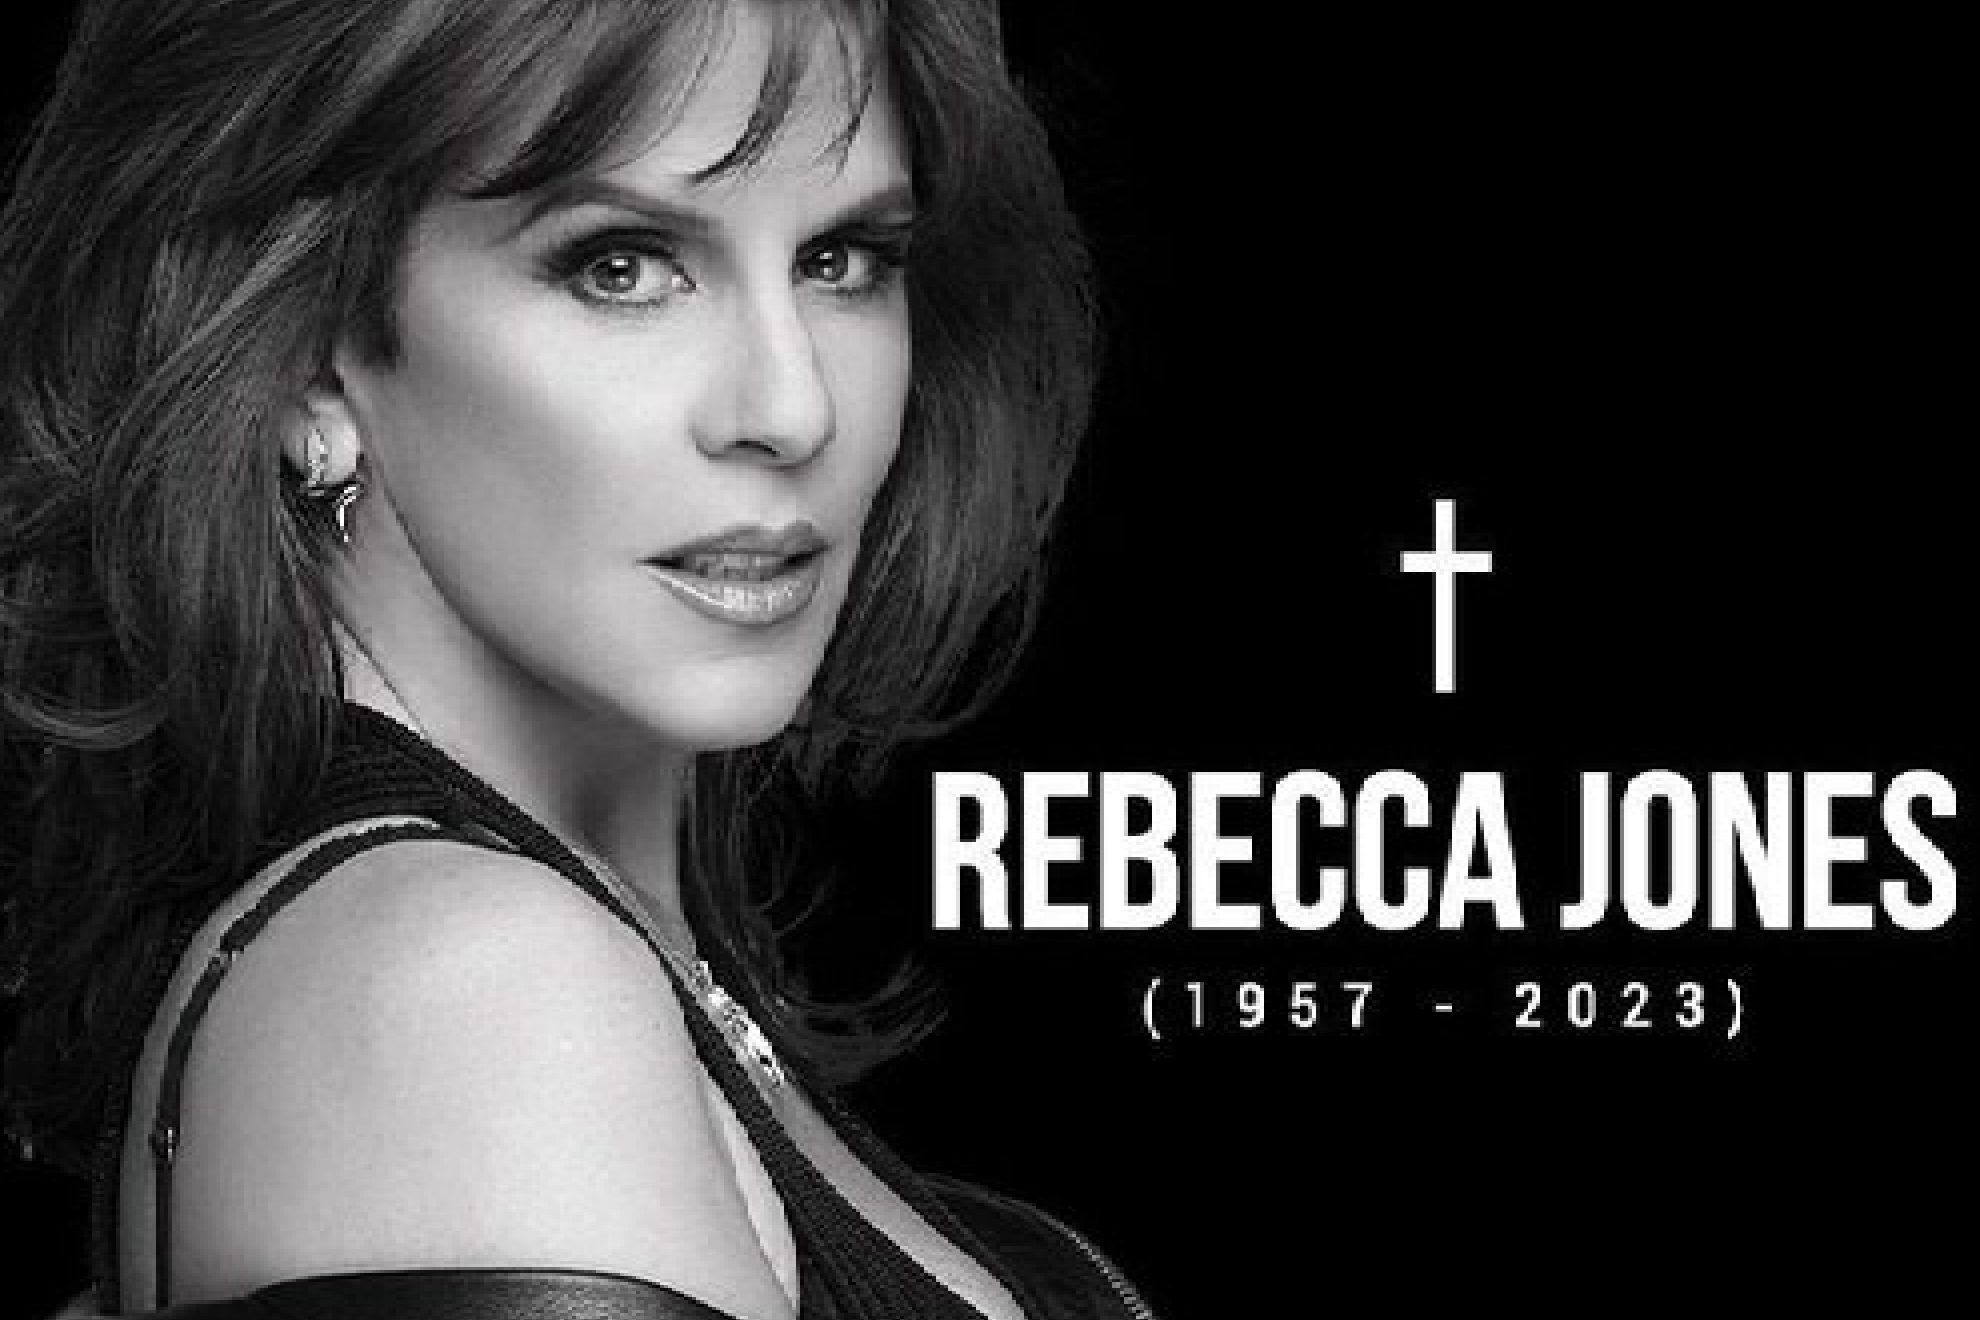 Rebecca Jones una de las grandes actrices que mantuvo discreción entre su vida pública y privada